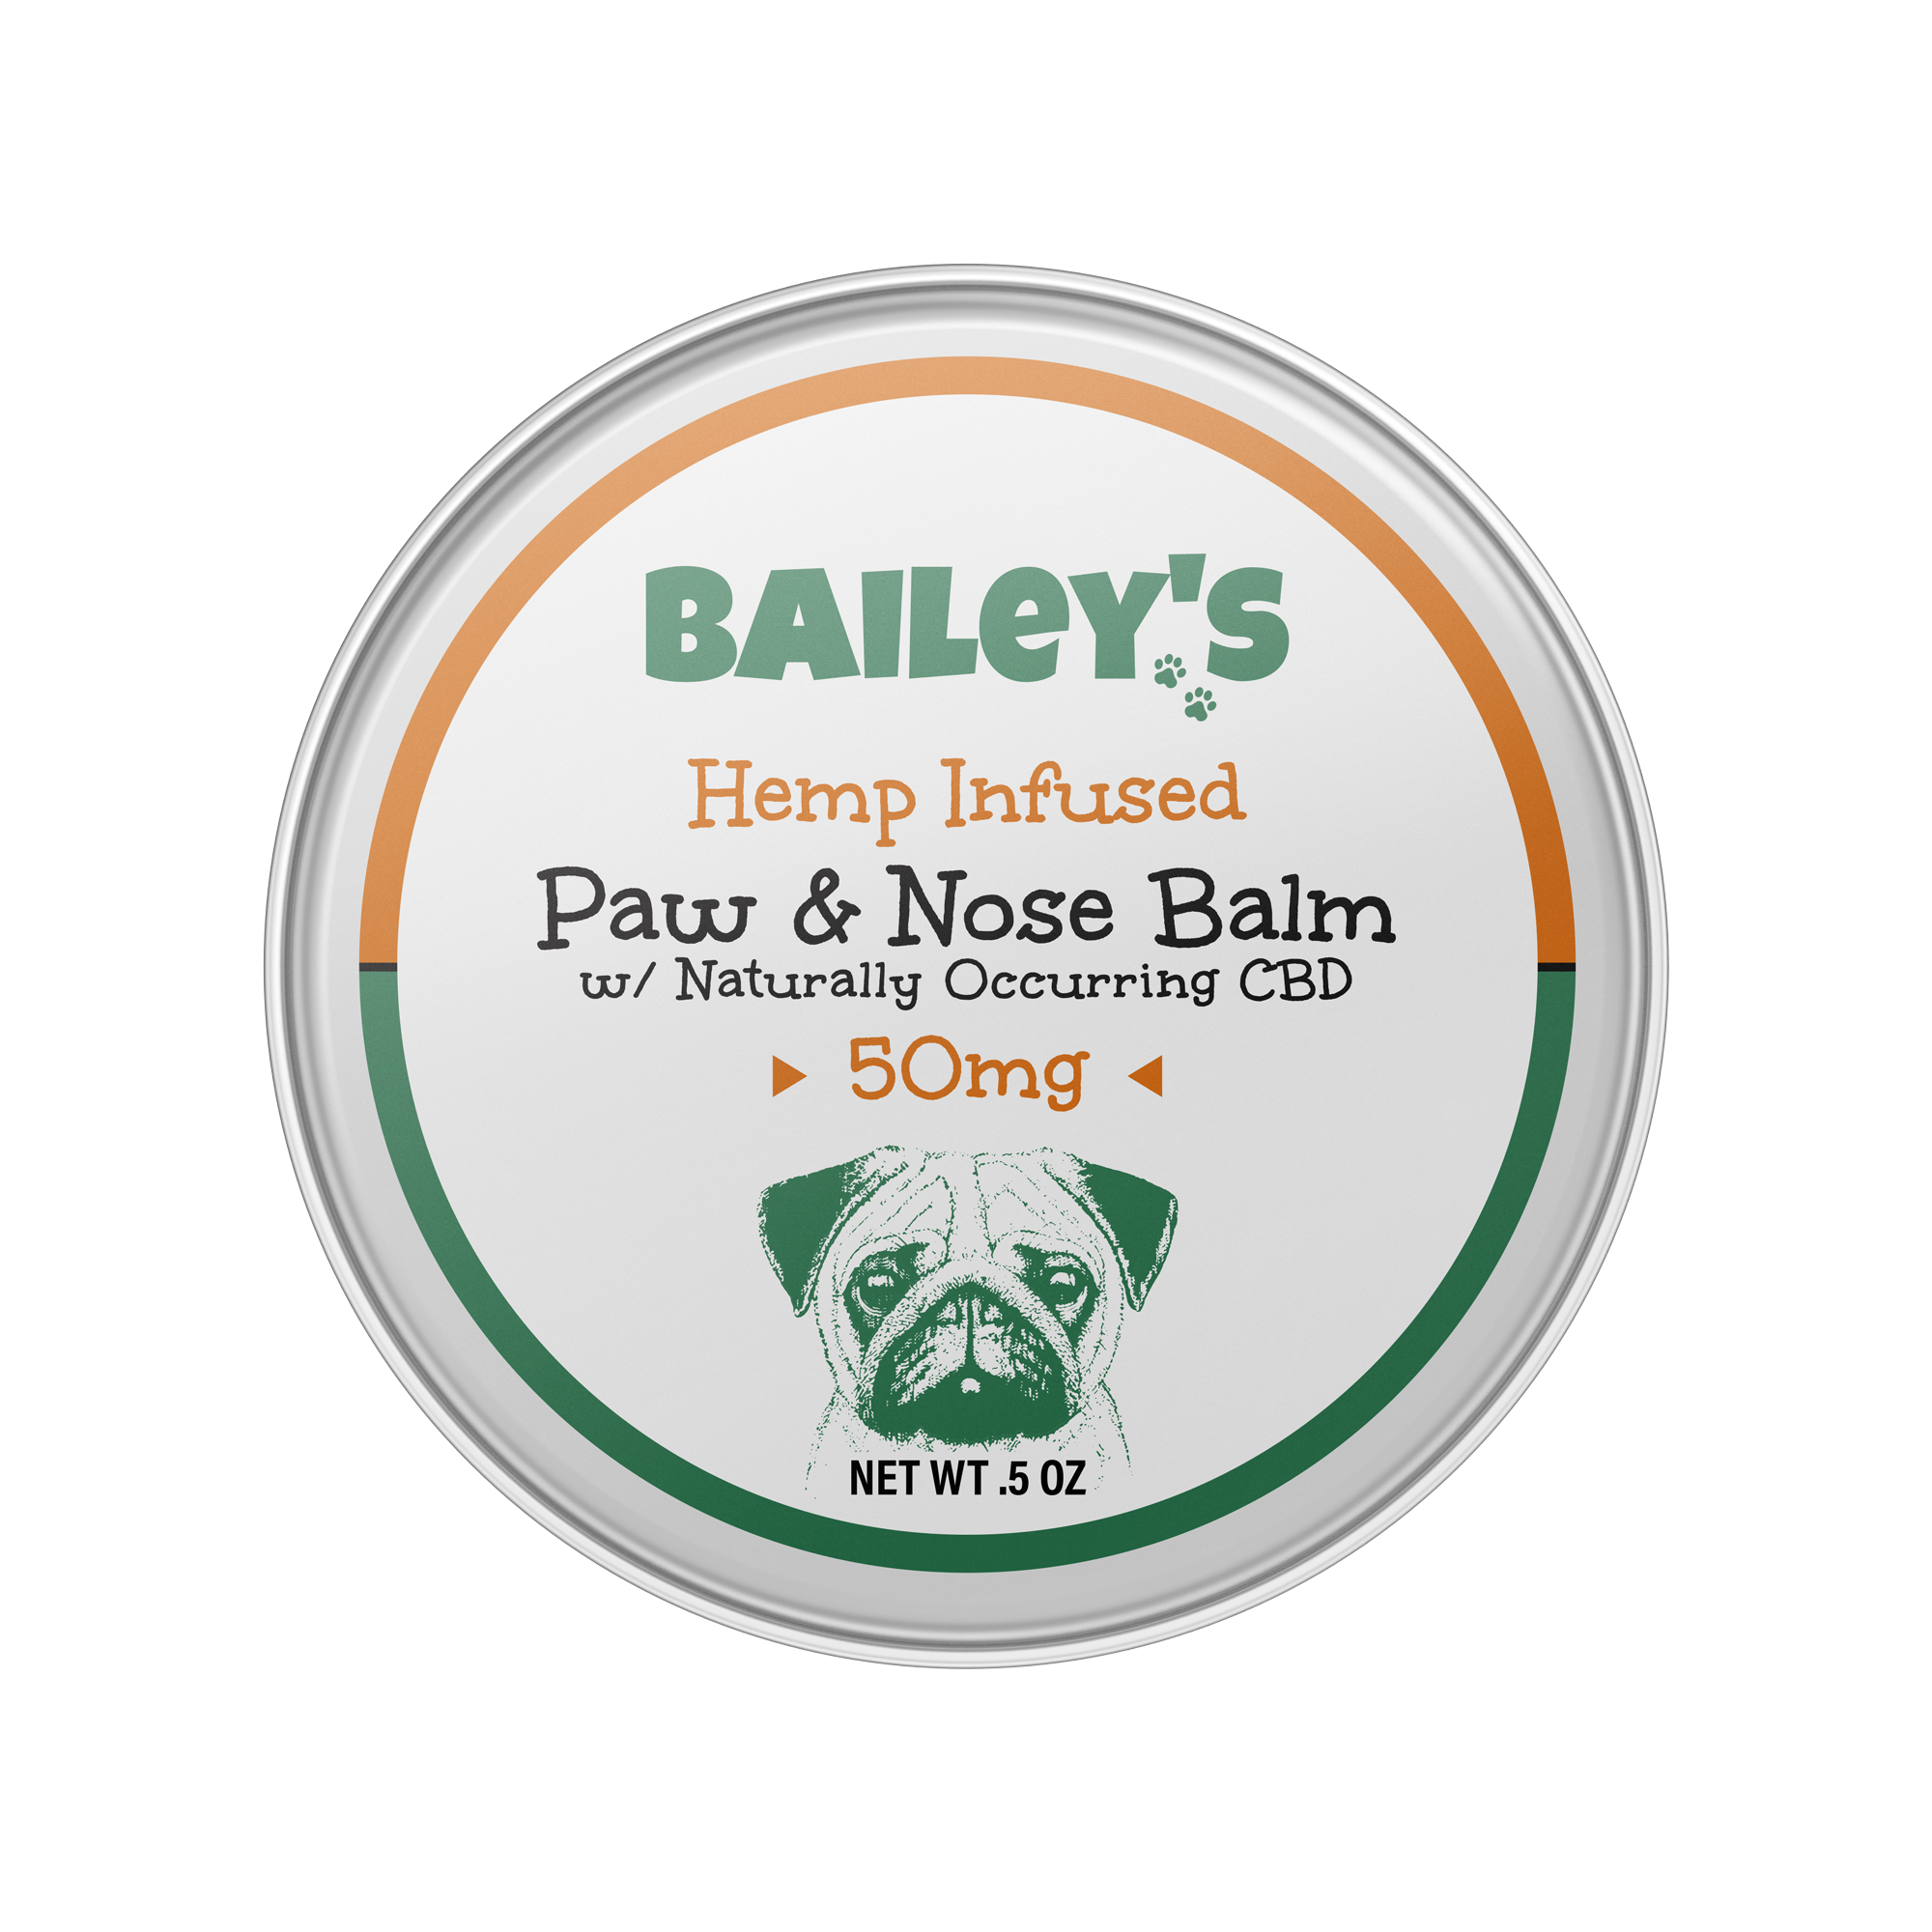 Baileys Paw & Nose Balm 50mg